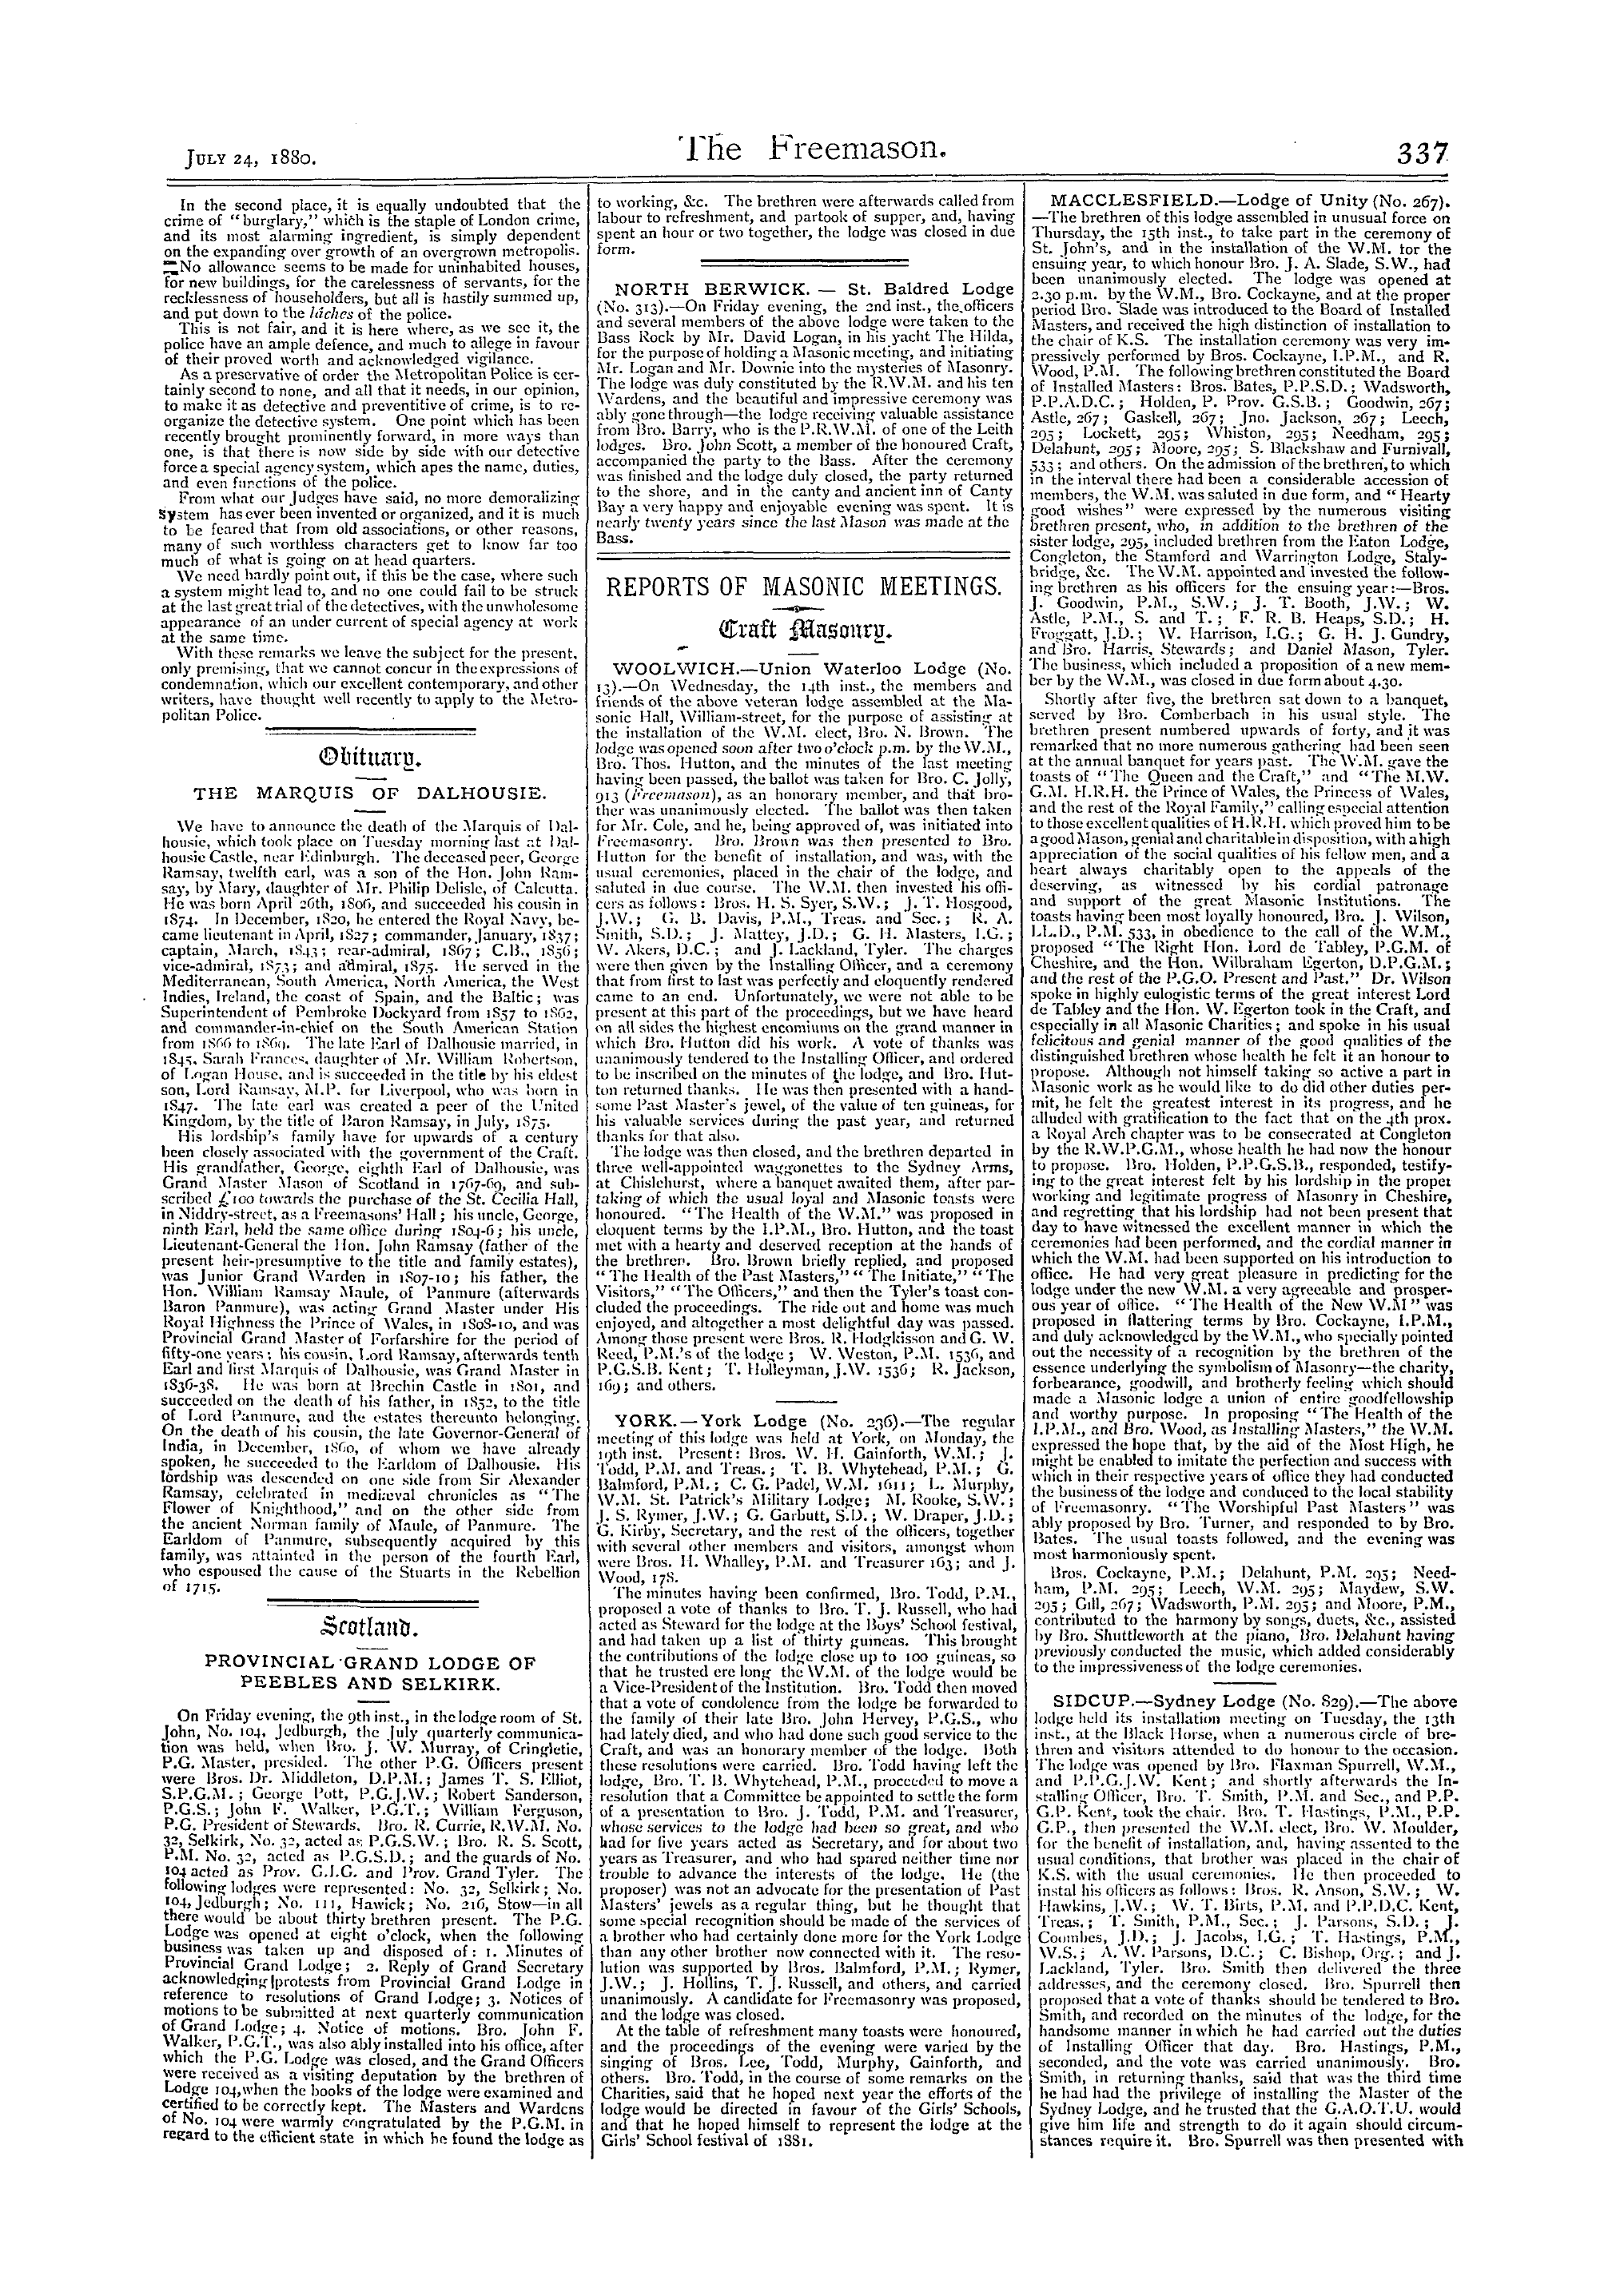 The Freemason: 1880-07-24 - Communique.